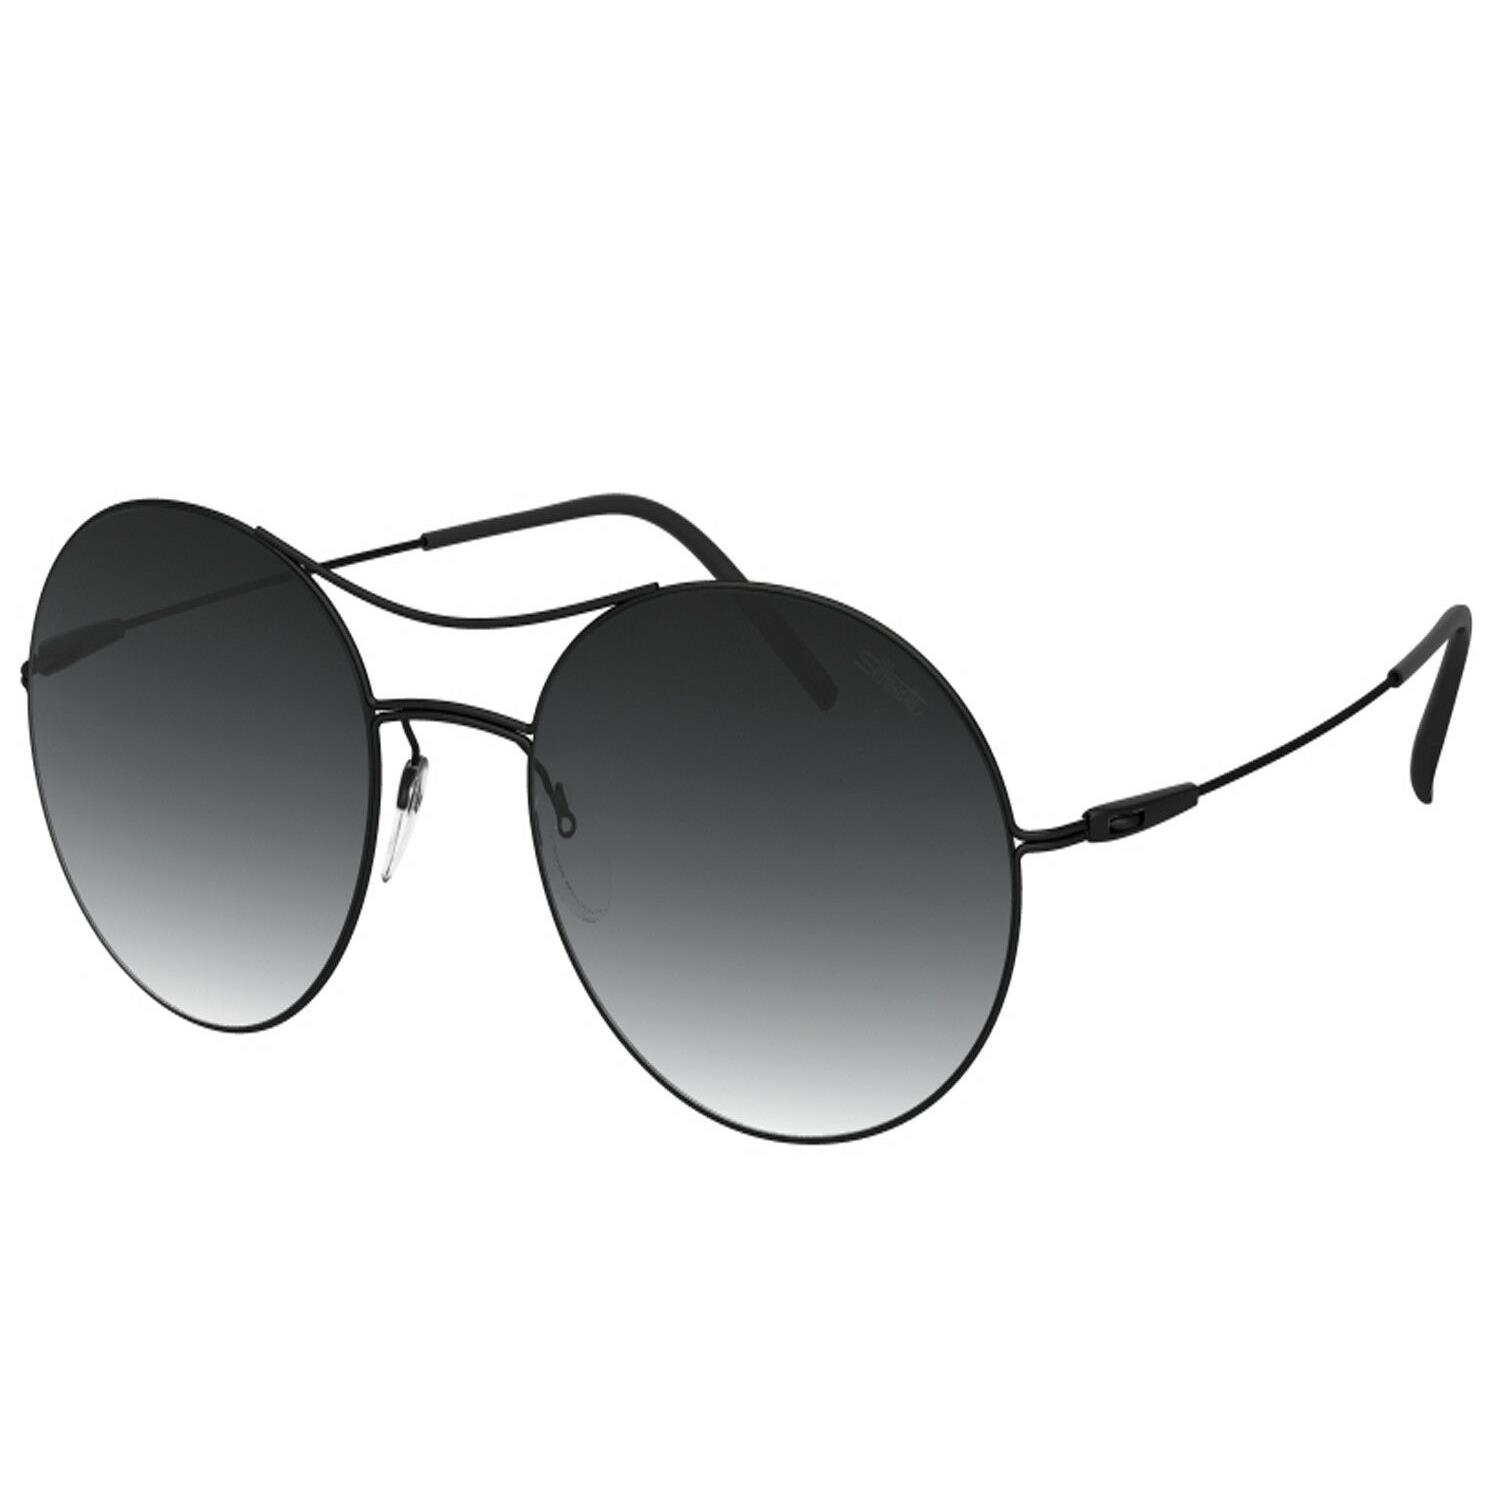 Silhouette Sunglasses Titan Breeze 8694 Black Matte 8694-75-9040